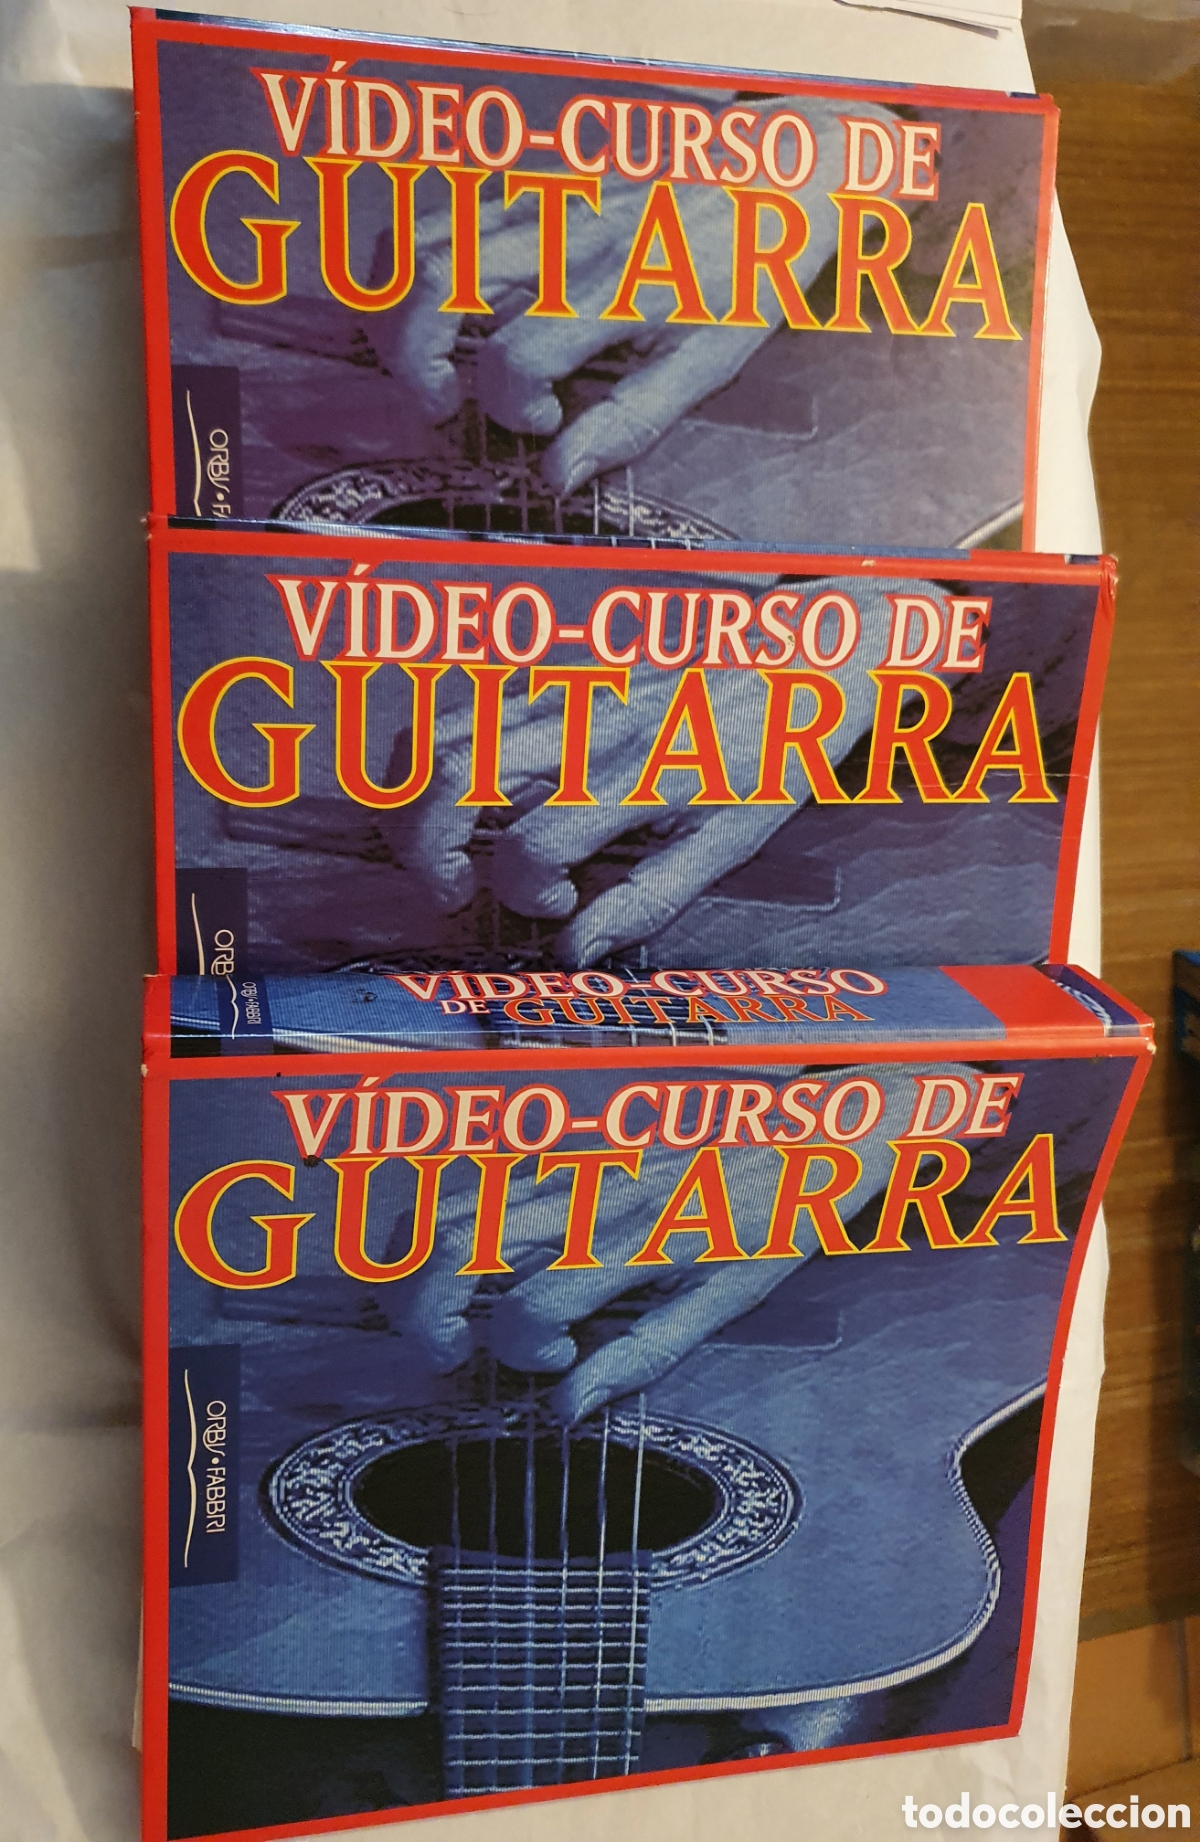 enlazar Unirse Reunión video curso de guitarra orbis-fabris 1996 - Compra venta en todocoleccion